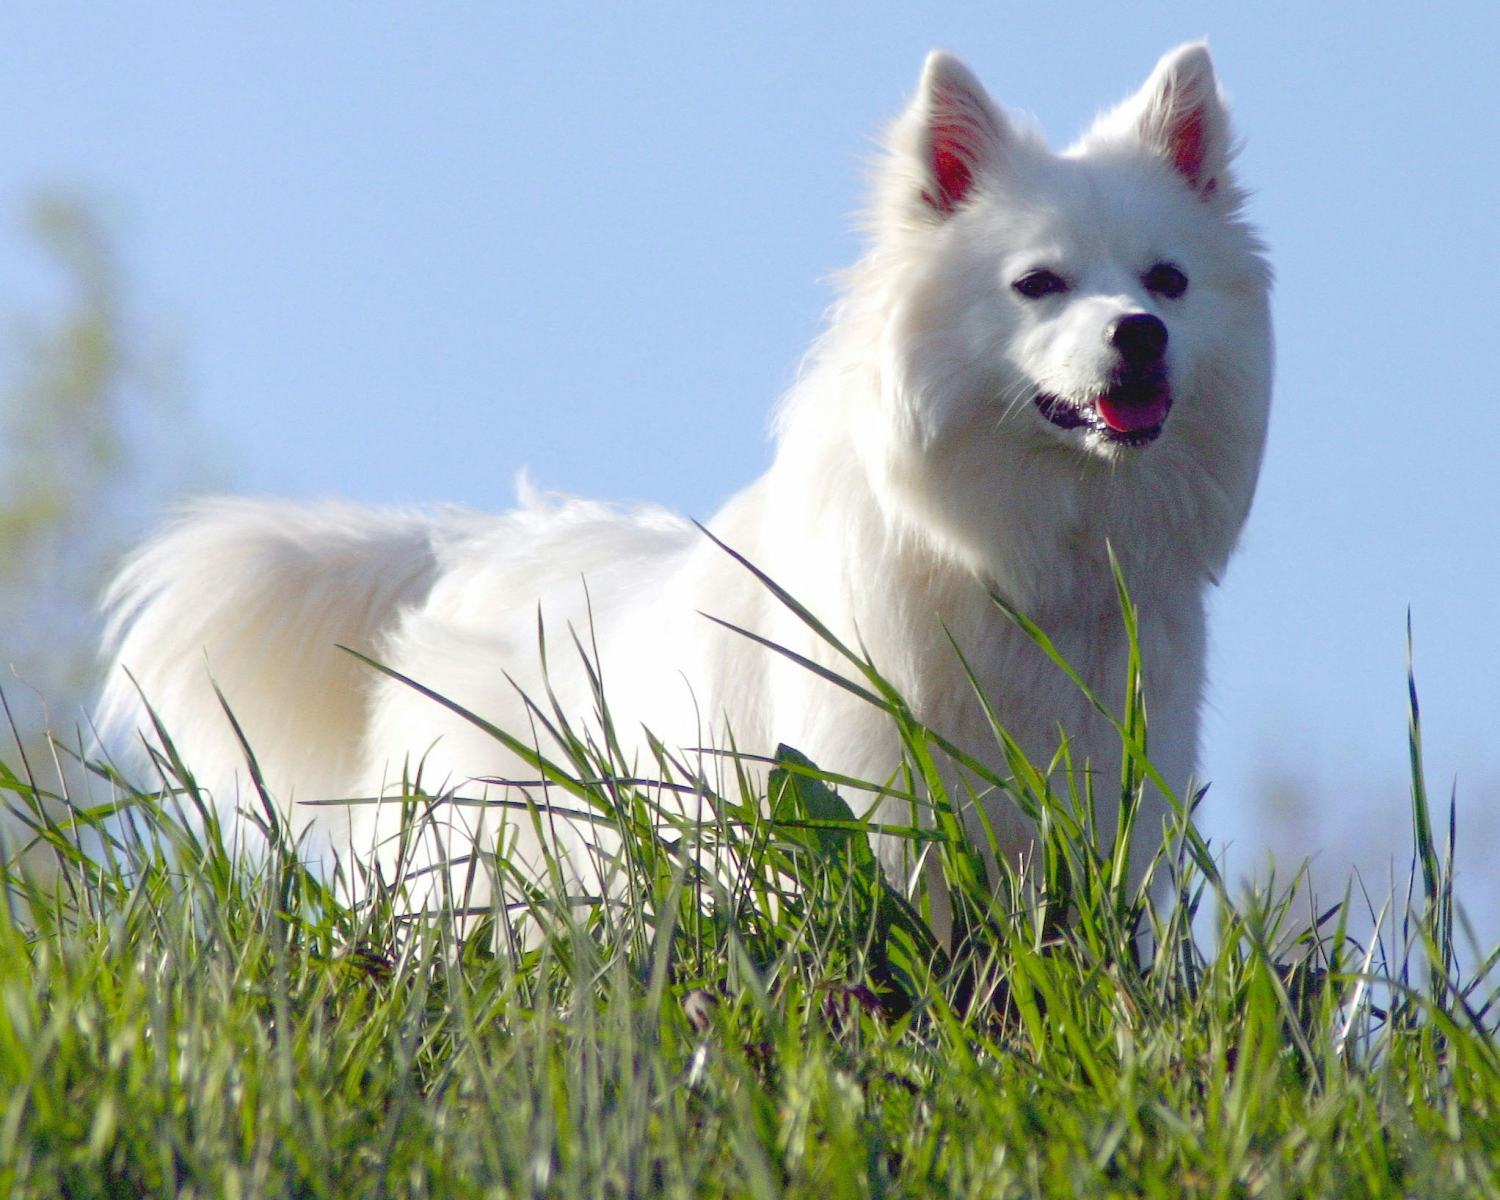 Secondary image of American Eskimo Dog dog breed